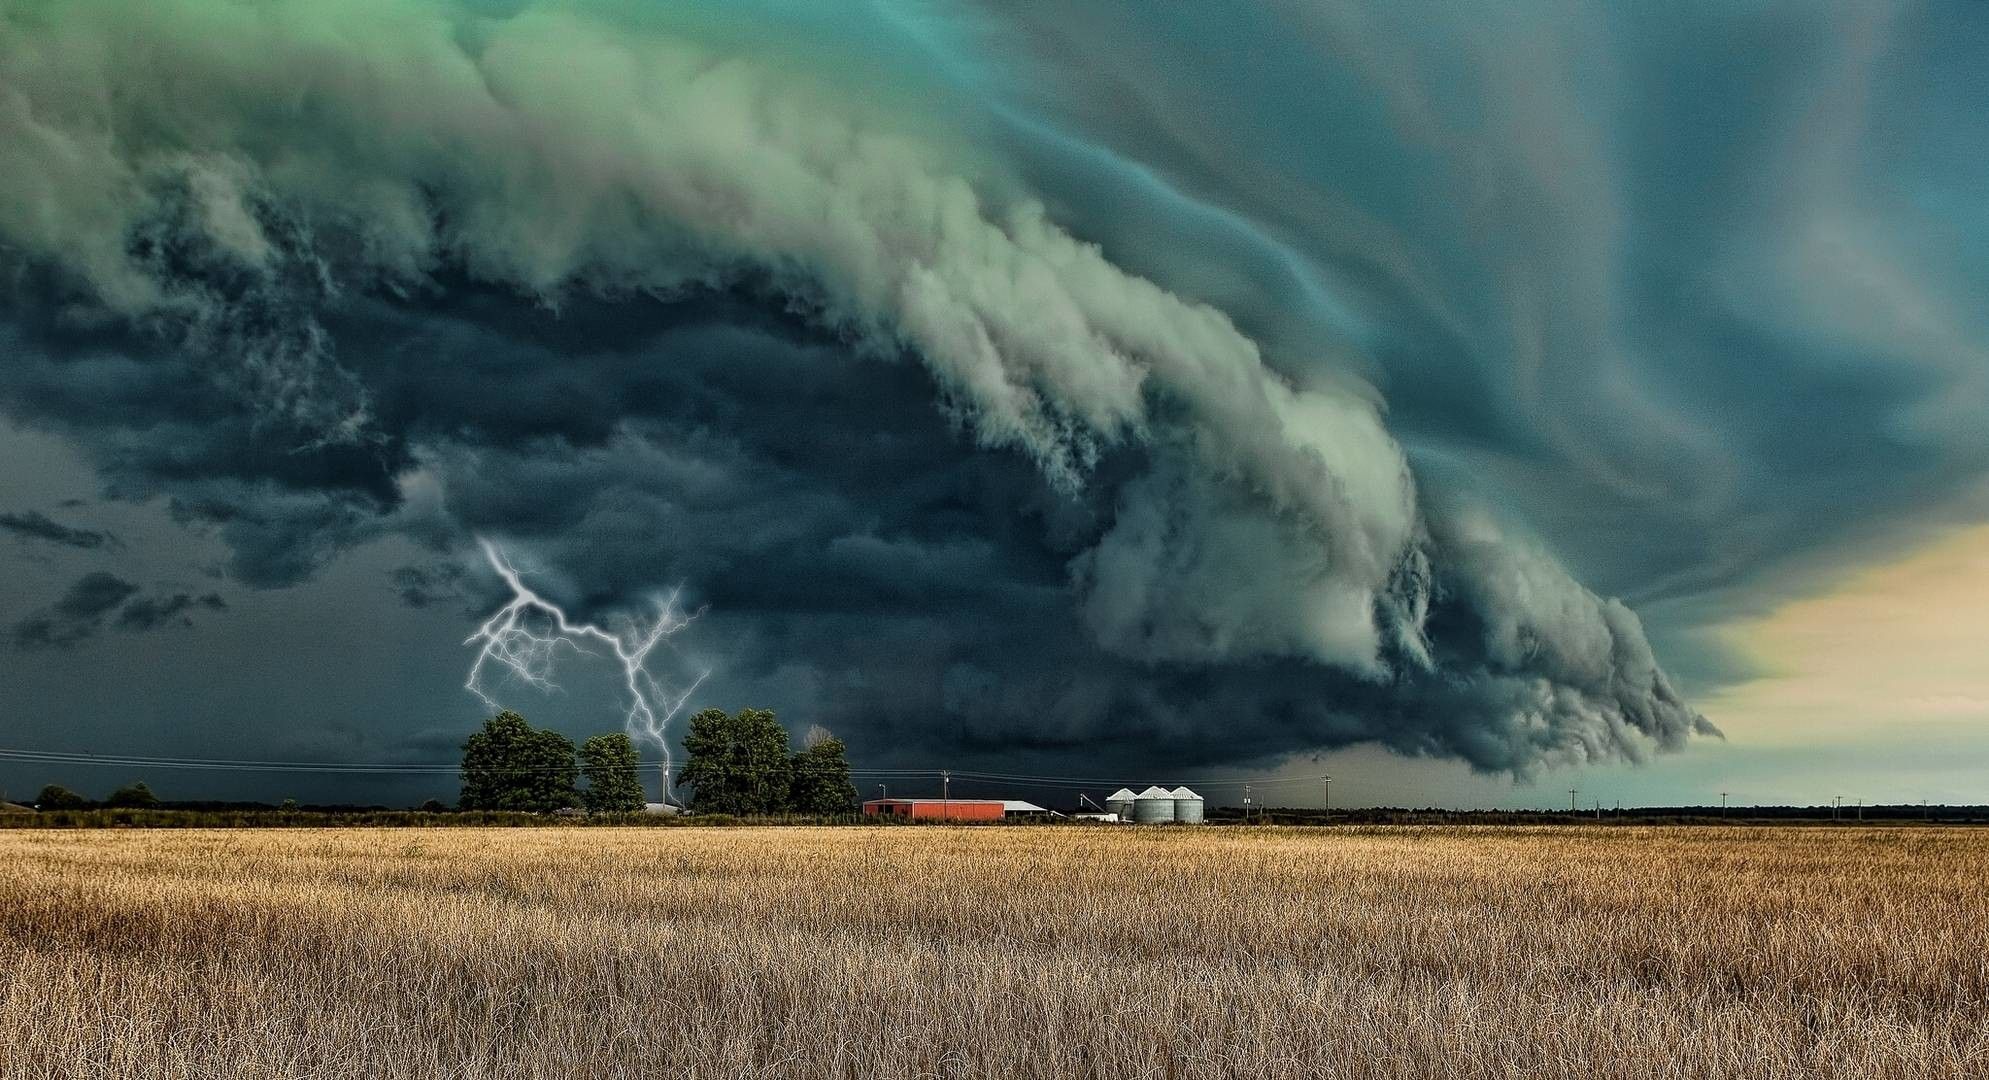 Storm Cloud Wallpaper